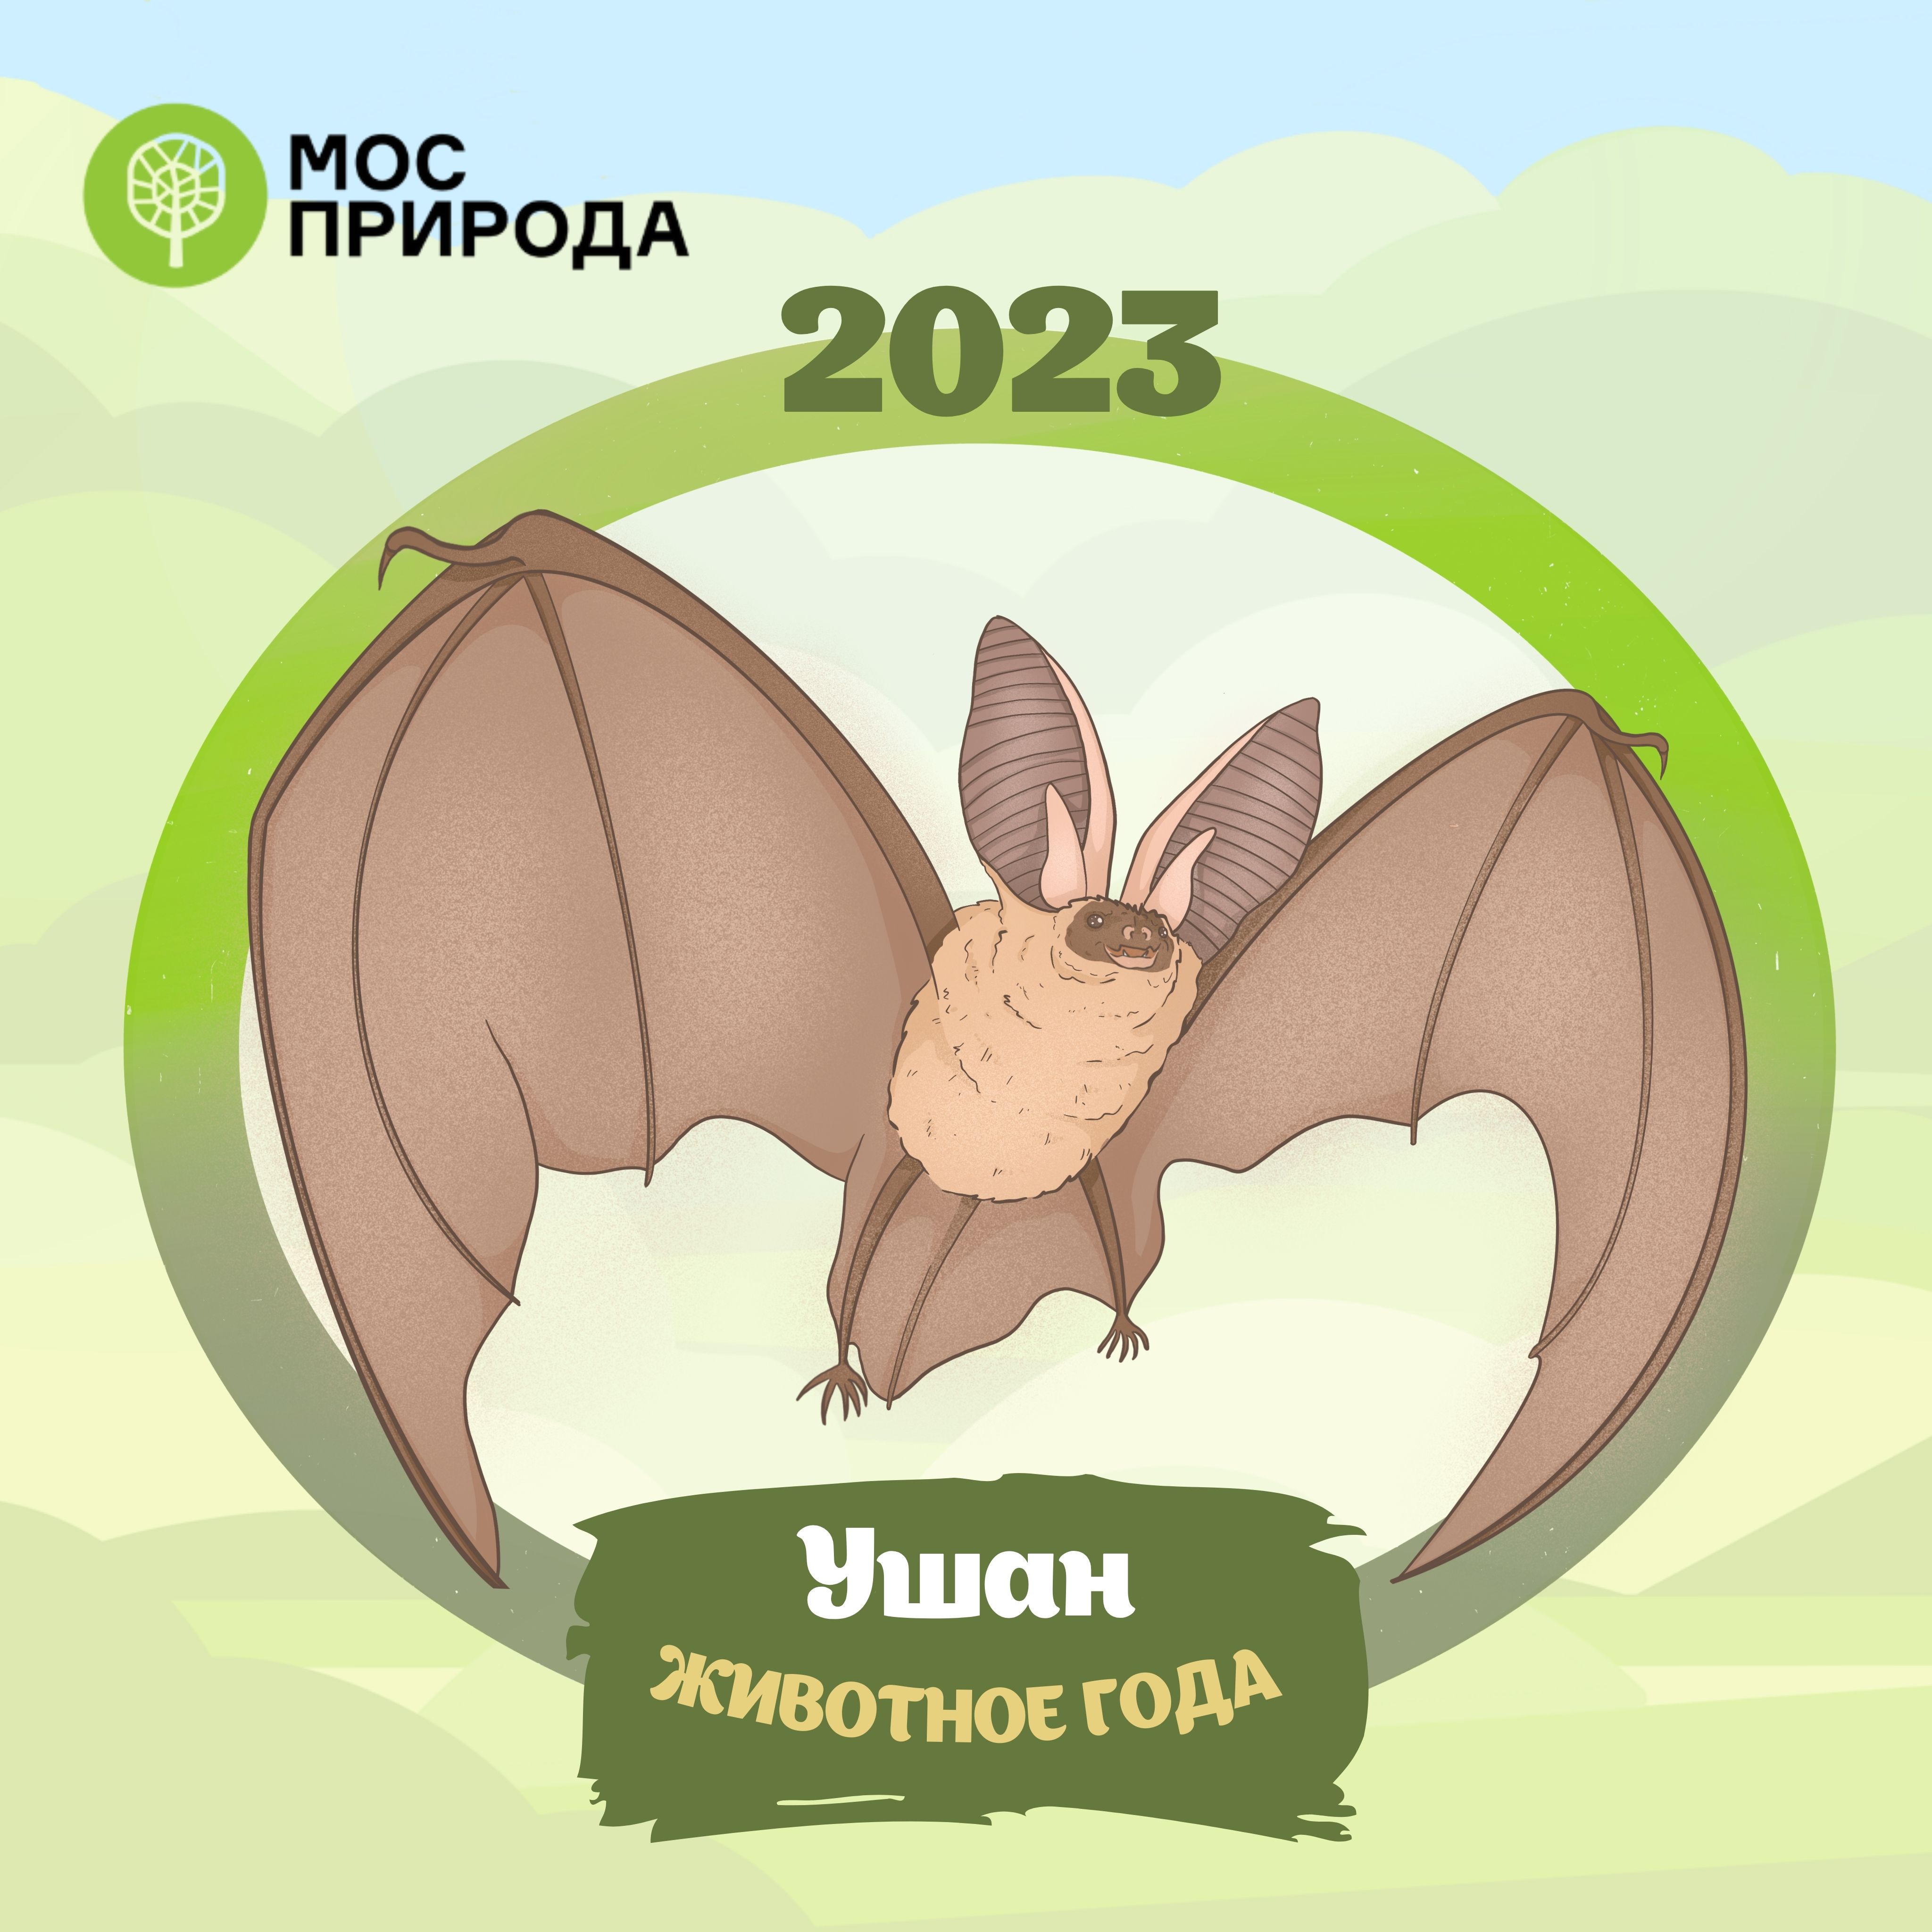 Животное-2023: по итогам онлайн-голосования выбран символ года в Москве - фото 1